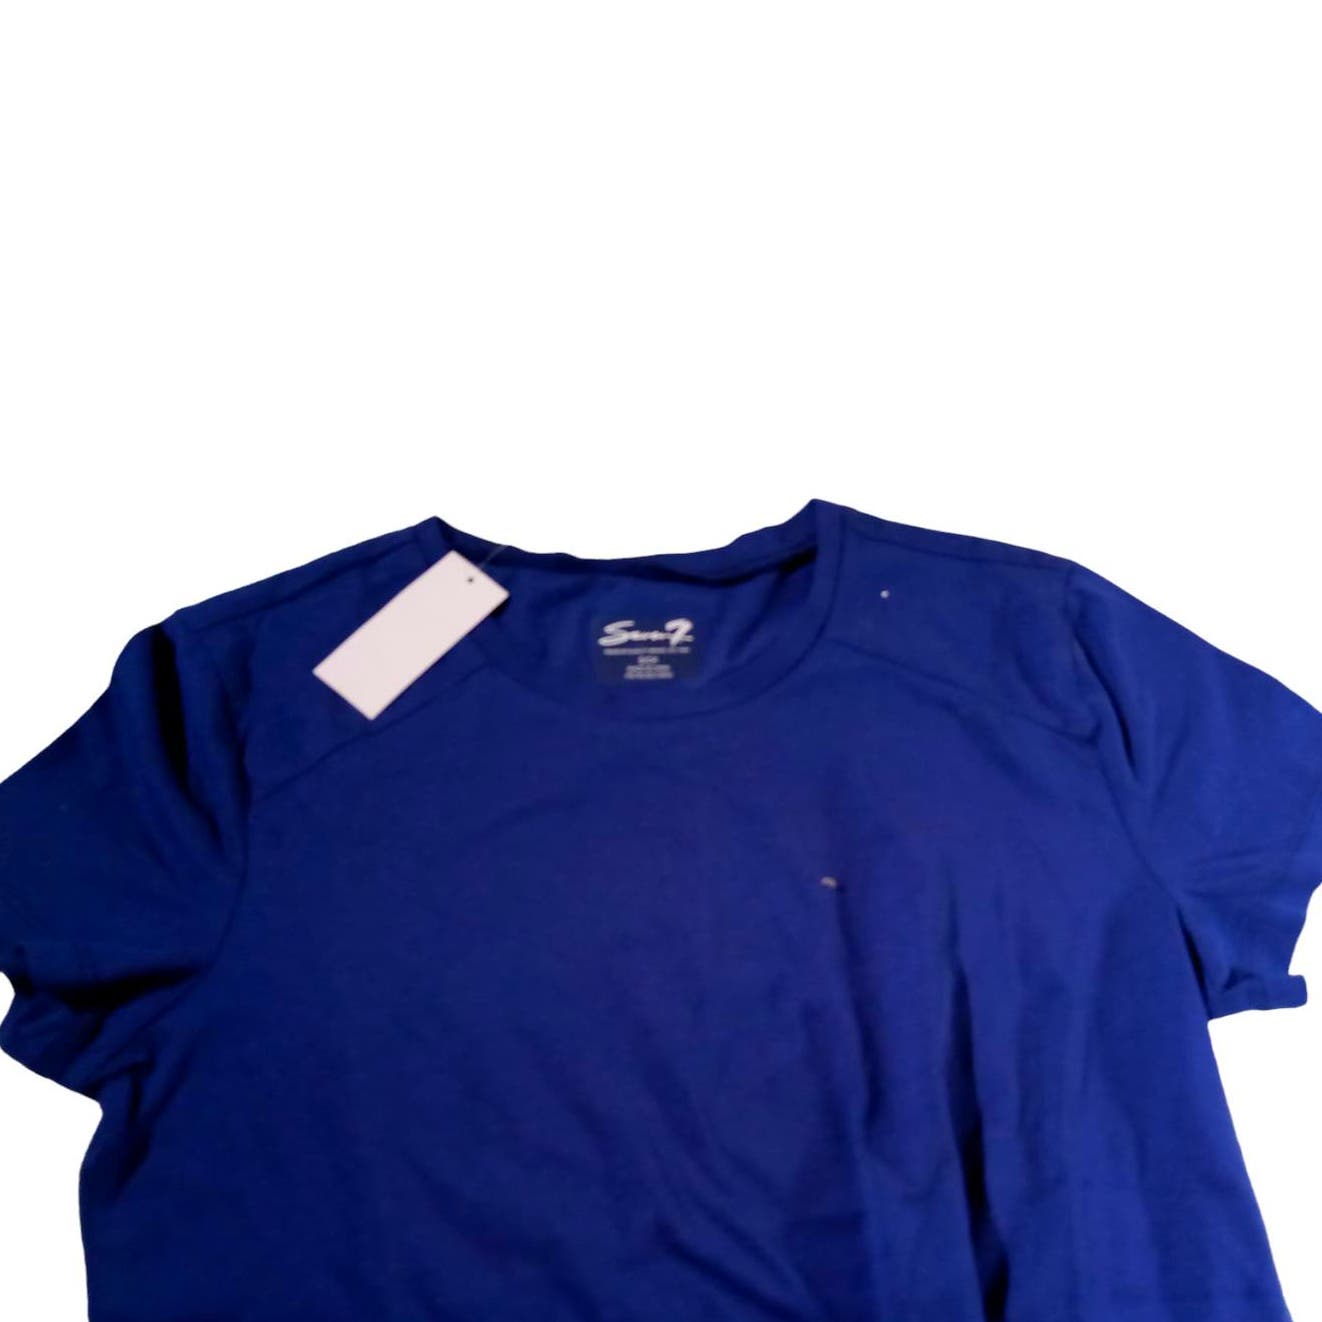 Seven7 Women Small Cotton Crew Neck Short Sleeve T-Shirt (Navy Blue)